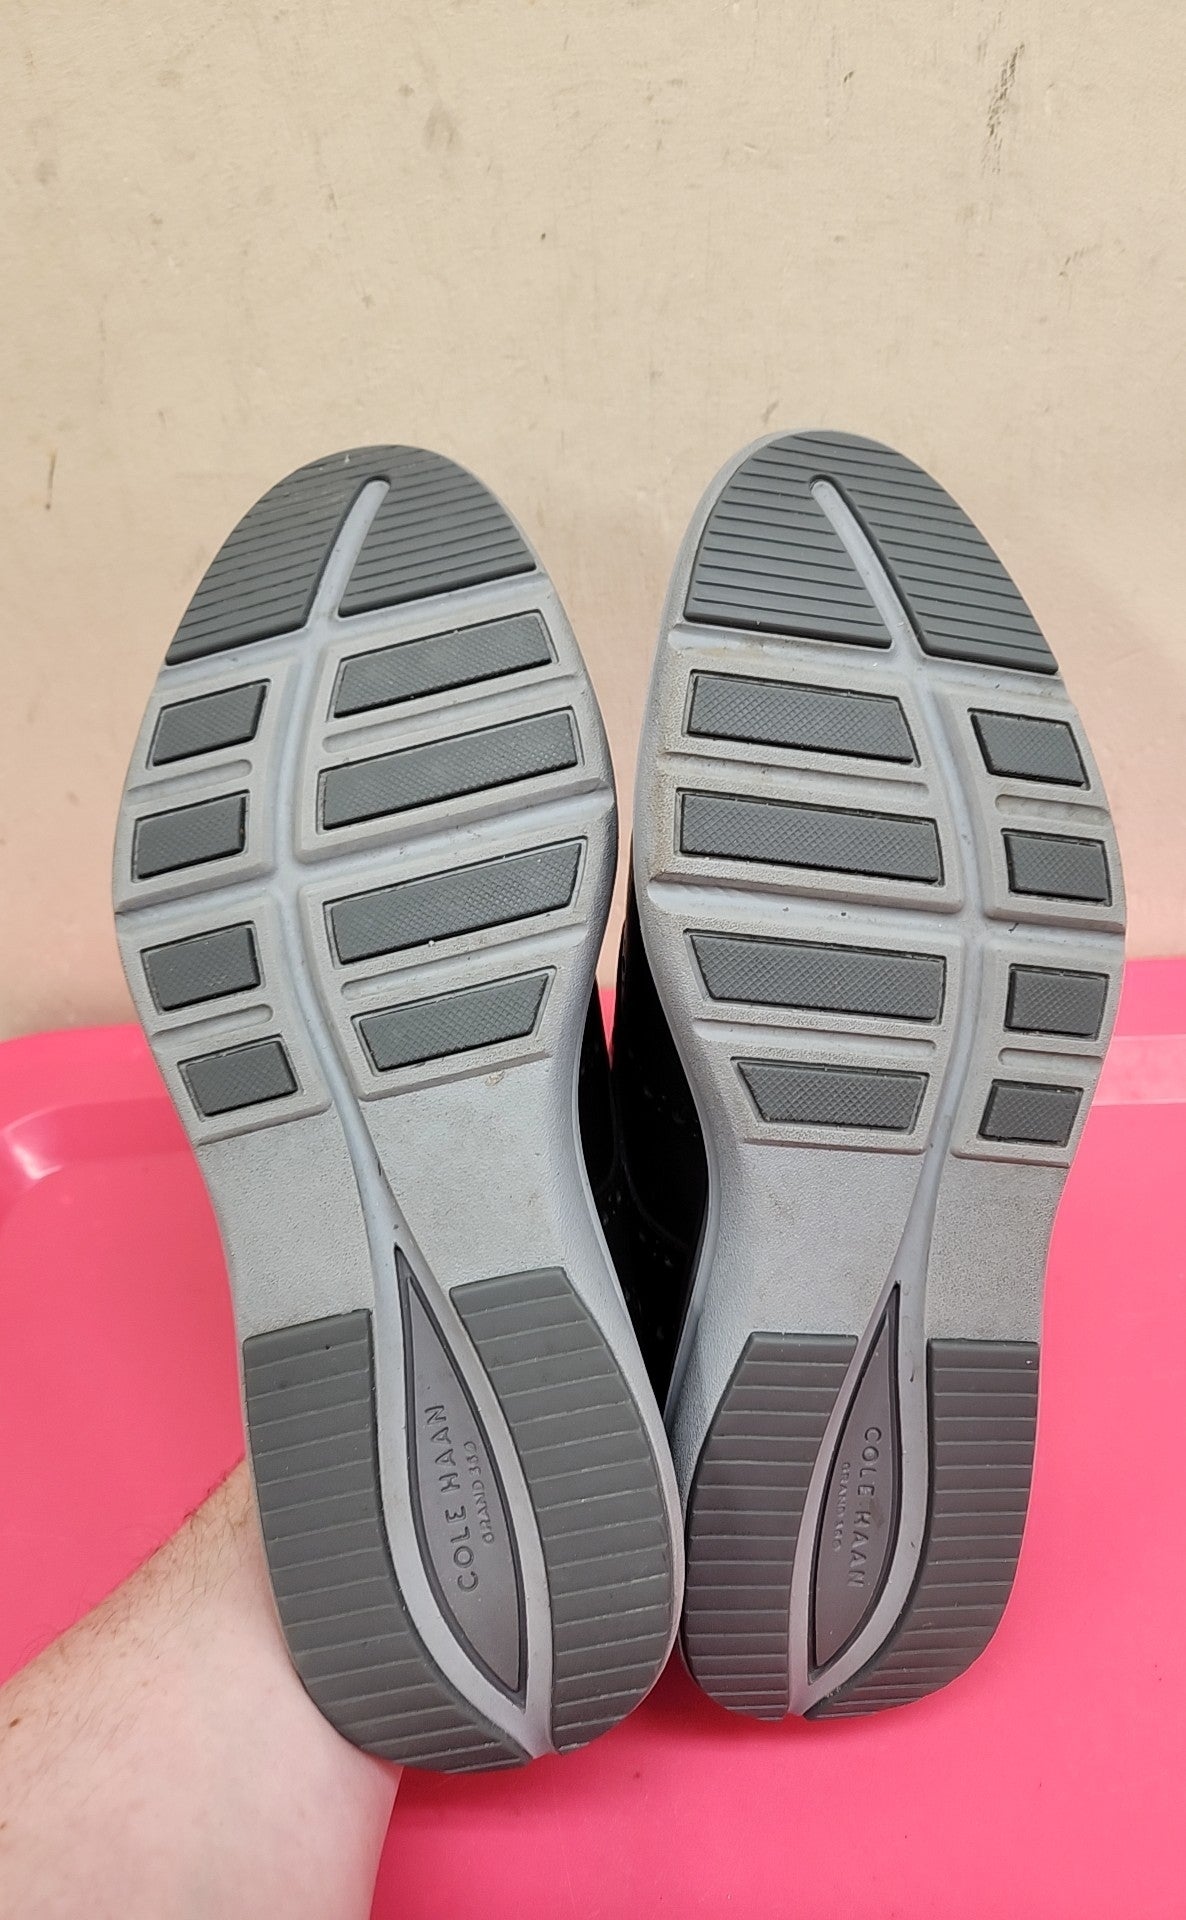 Cole Haan Men's Size 8-1/2 Black Shoes